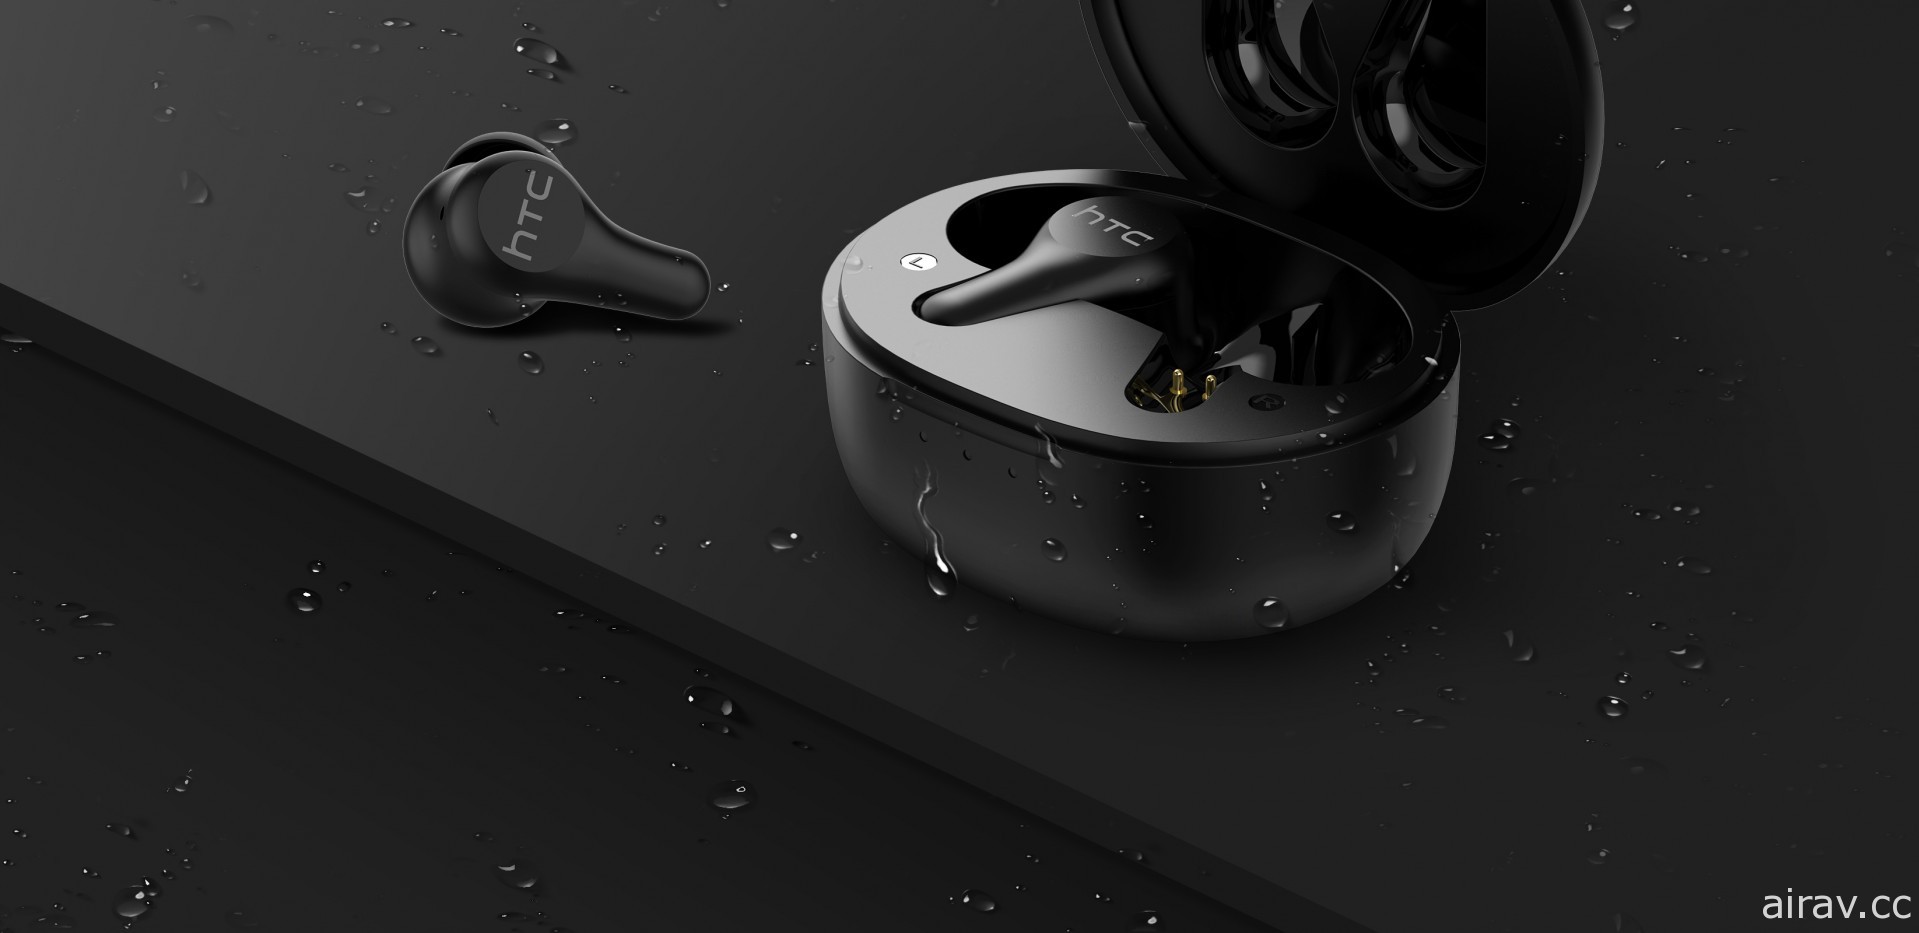 HTC 推新一代降噪防水真无线蓝牙耳机 包含 ANC 主动降噪及 IPX5 防水功能